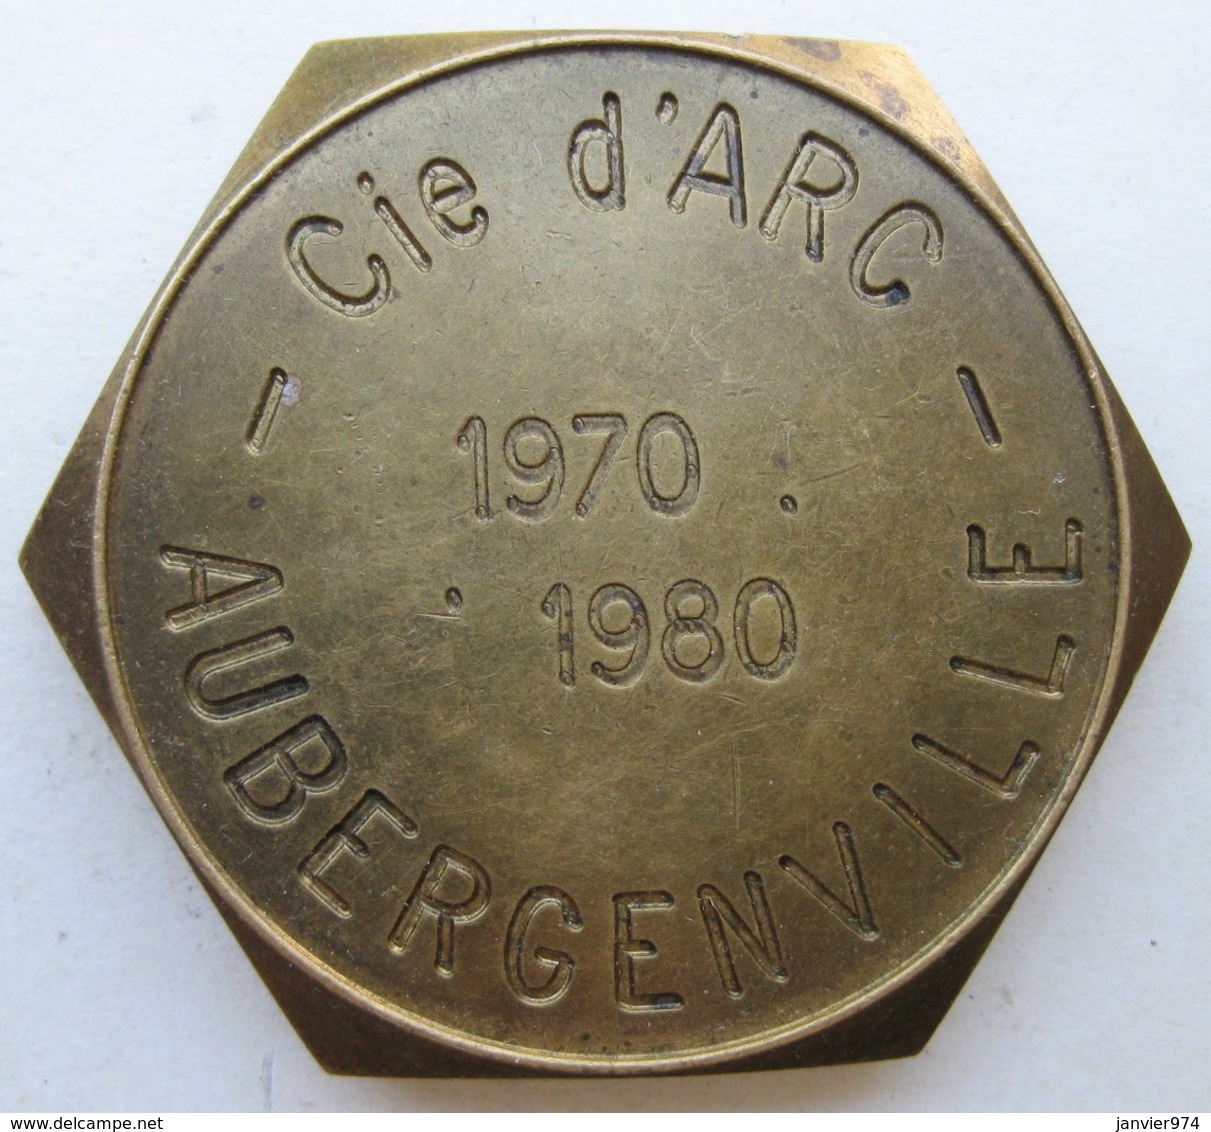 Medaille Compagnie D'Arc D'Aubergenville Yvelines Tic à L’Arc , 10 Anniversaires 1970 1980 - Professionals/Firms